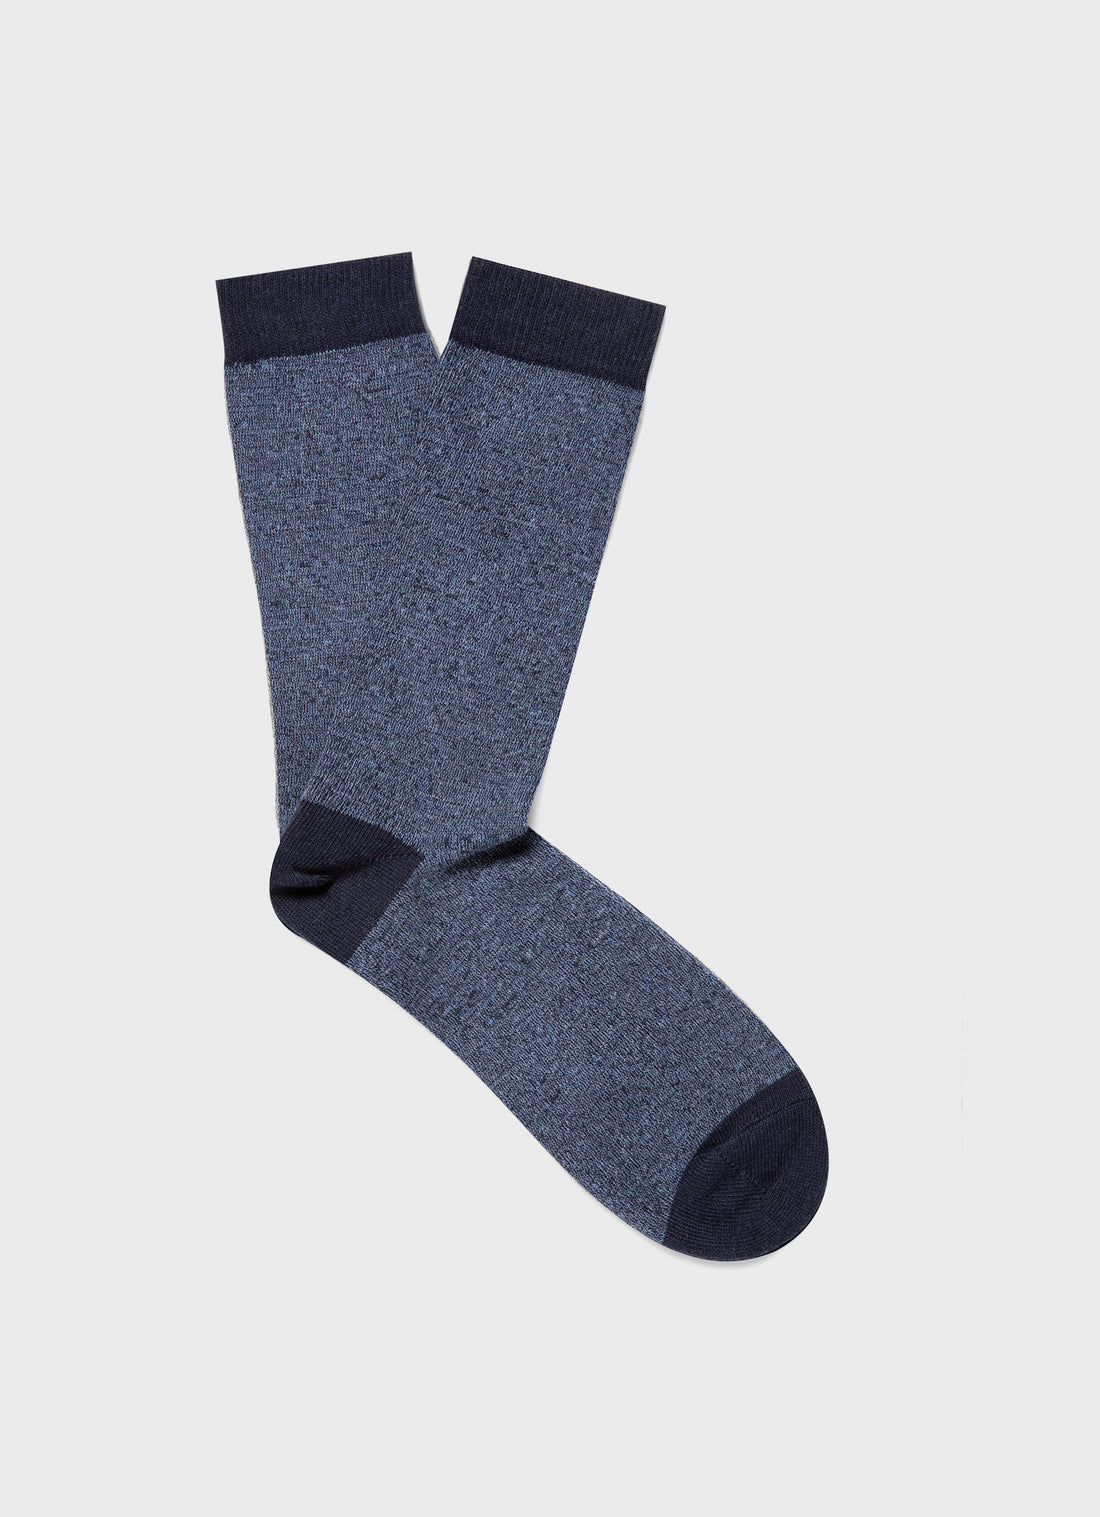 Men's Cotton Socks in Navy Blue Twist